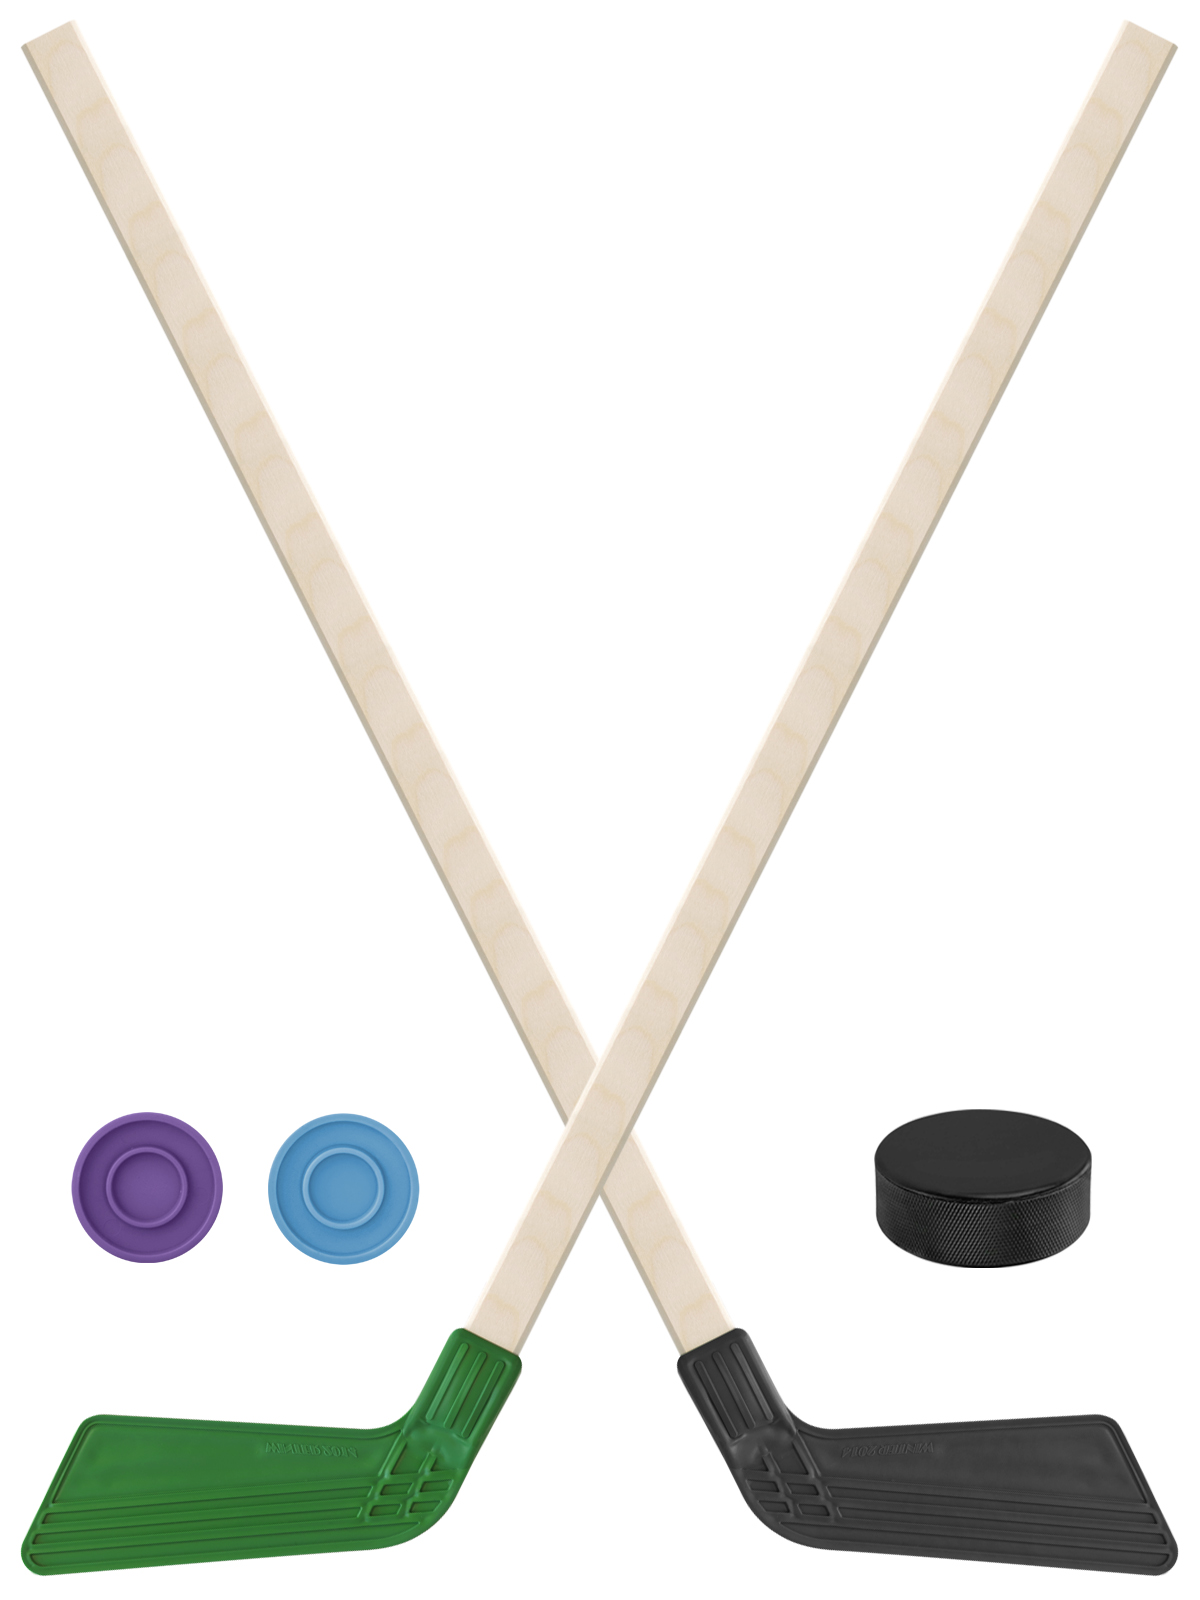 Детский хоккейный набор Задира-плюс Клюшка хоккейная 80см 2шт(зел,чёрн)+2шайбы+Шайба 75 мм детский хоккейный набор задира плюс клюшка хоккейная 2шт син чёрн 2шайбы шайба 75 мм